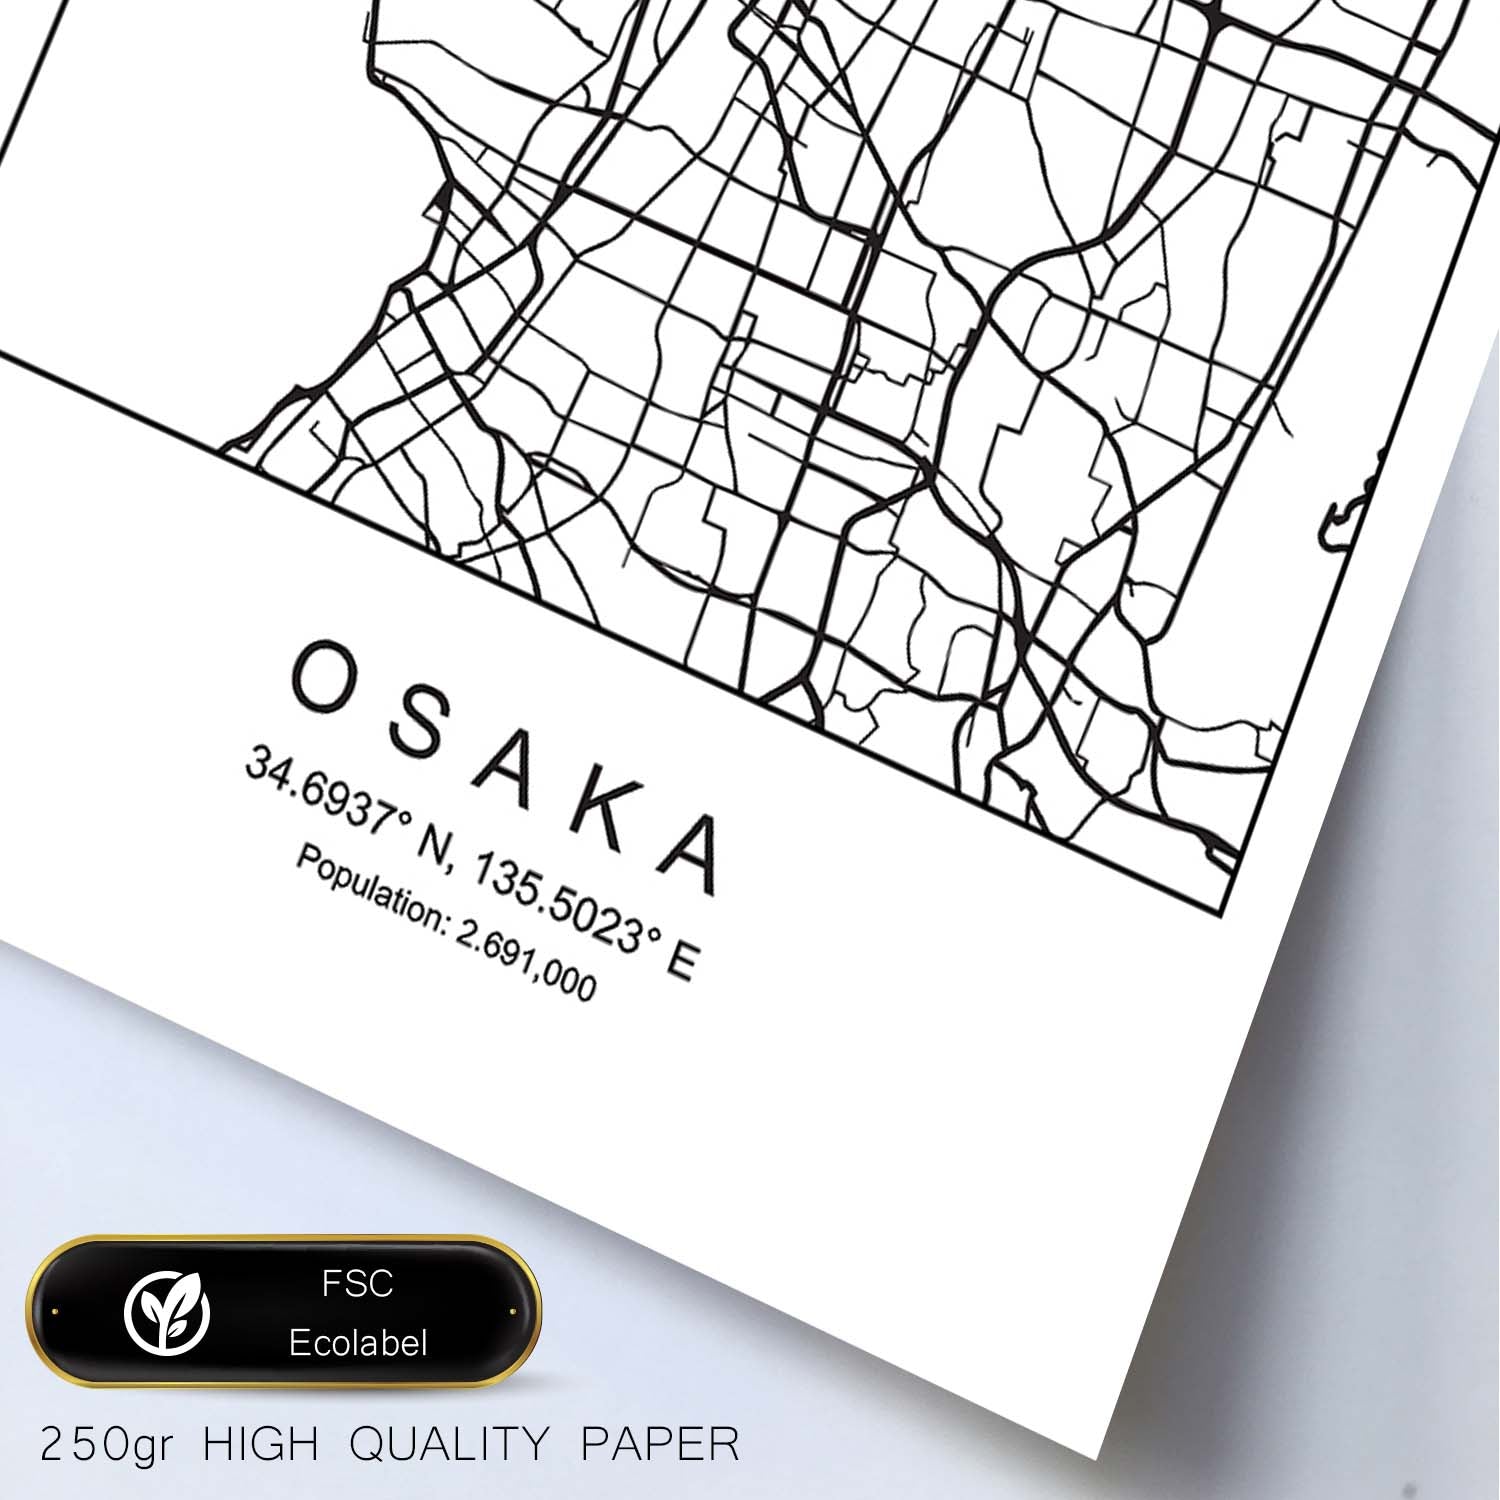 Lámina mapa de la ciudad Osaka estilo nordico en blanco y negro.-Artwork-Nacnic-Nacnic Estudio SL